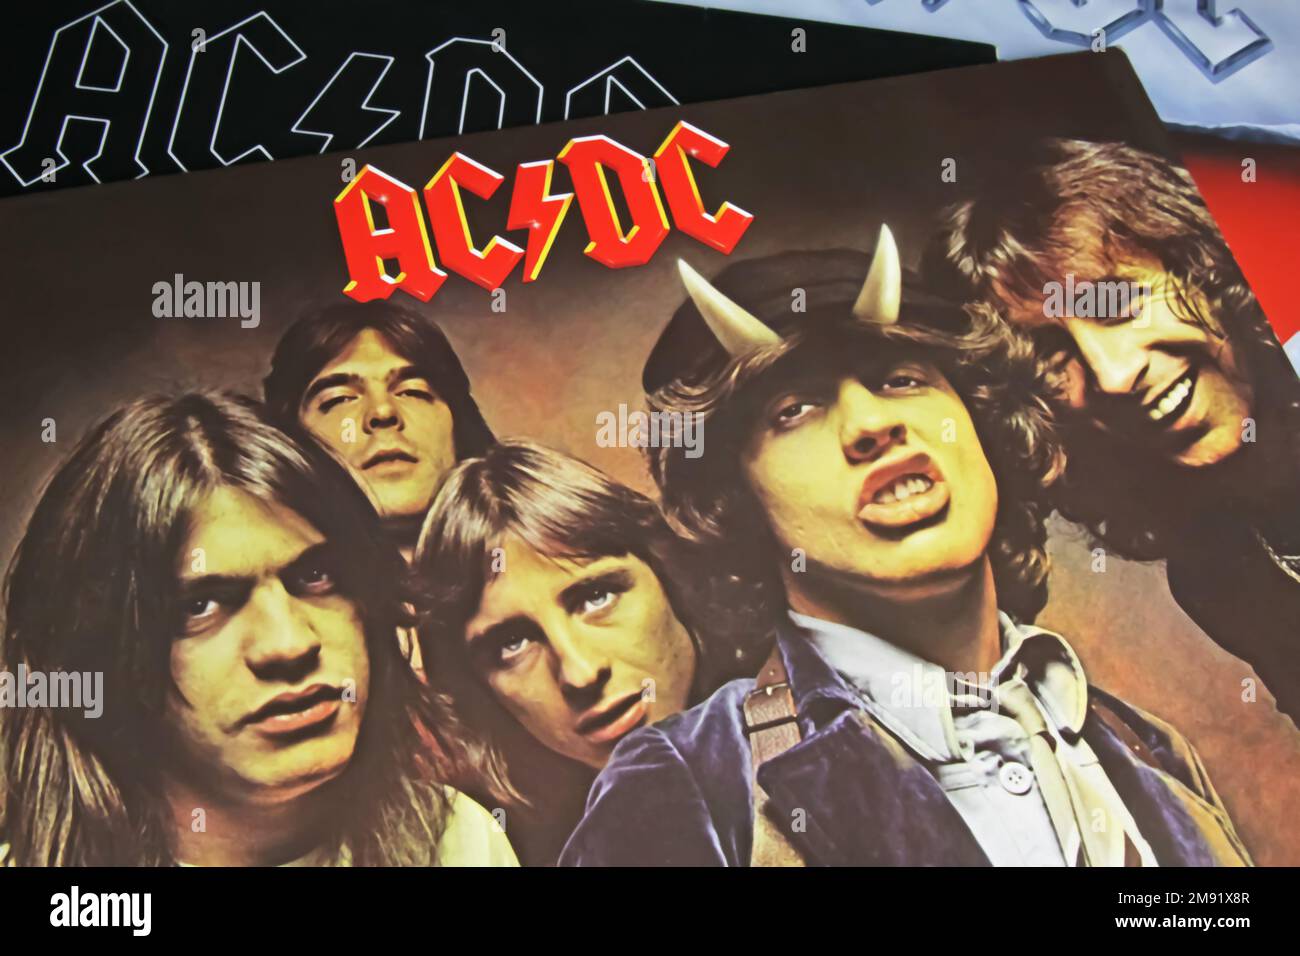 Viersen, Germania - Novembre 9. 2022: Closeup del disco in vinile isolato Highway to Hell album della band hard rock AC/DC pubblicato nel 1979 Foto Stock